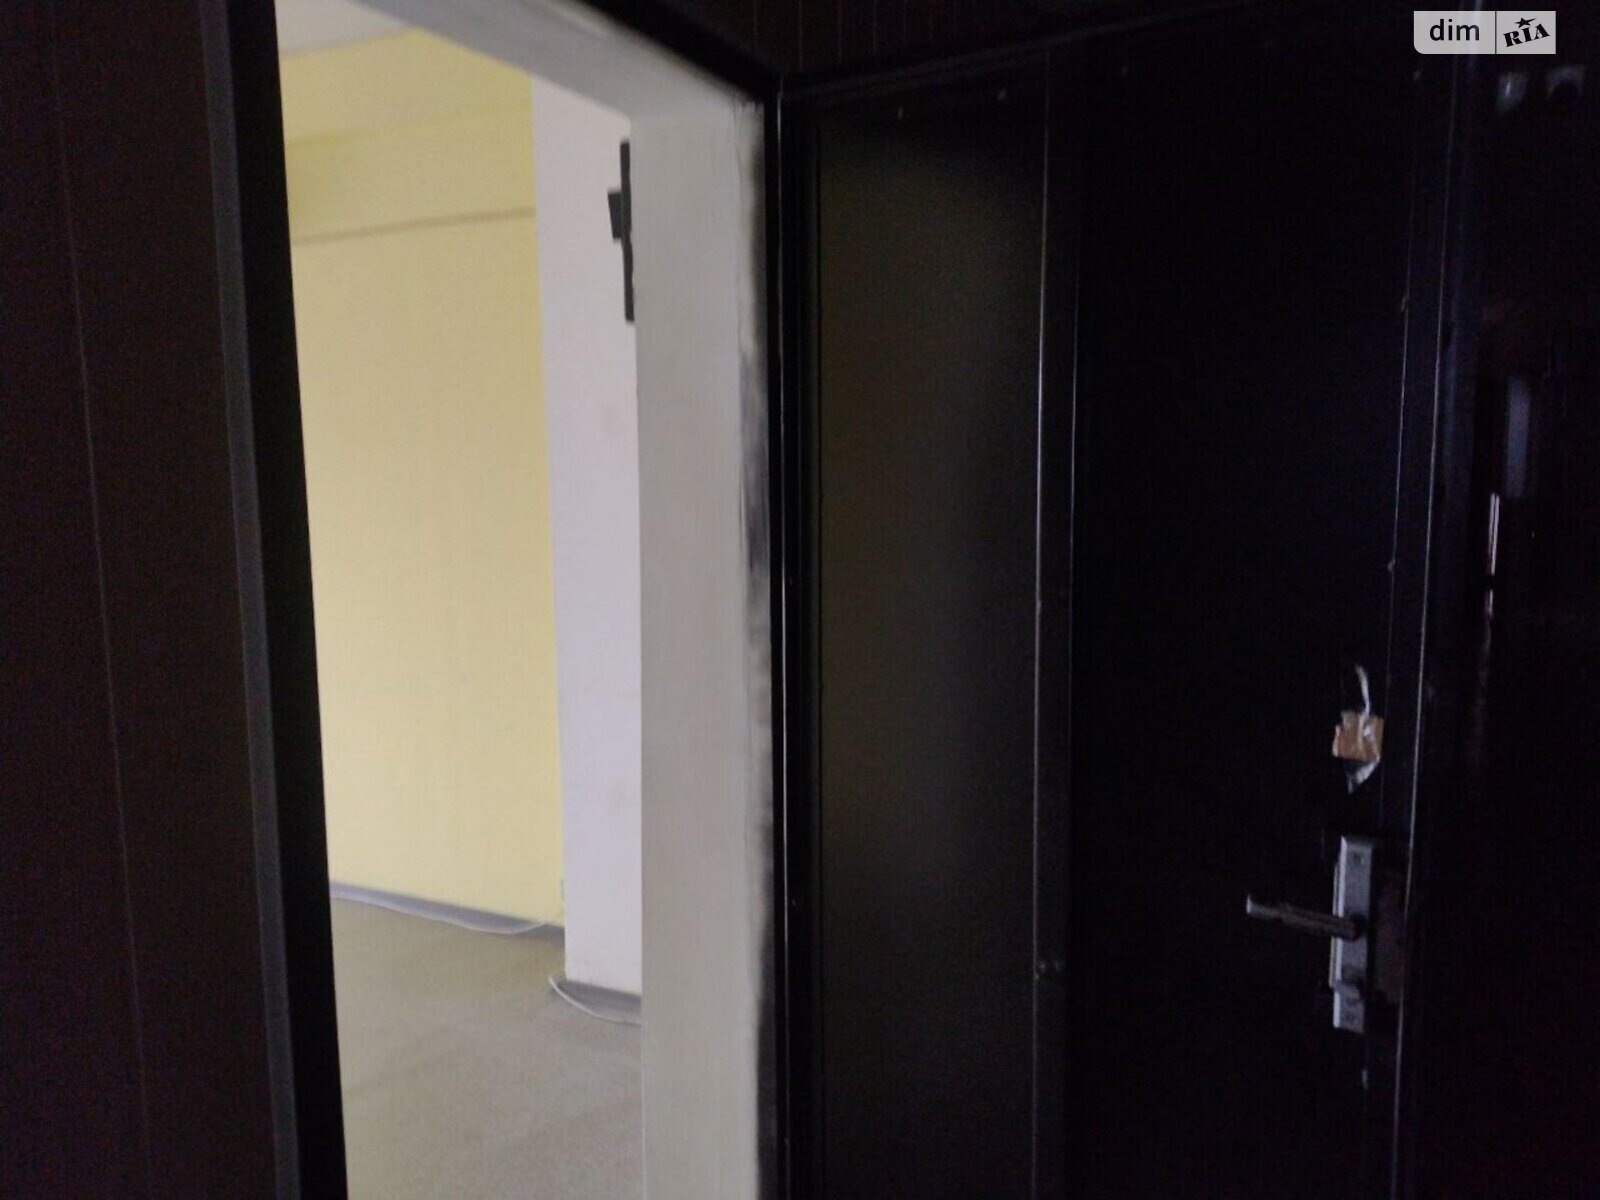 Аренда офисного помещения в Запорожье, Перша Ливарна, помещений - 1, этаж - 5 фото 1